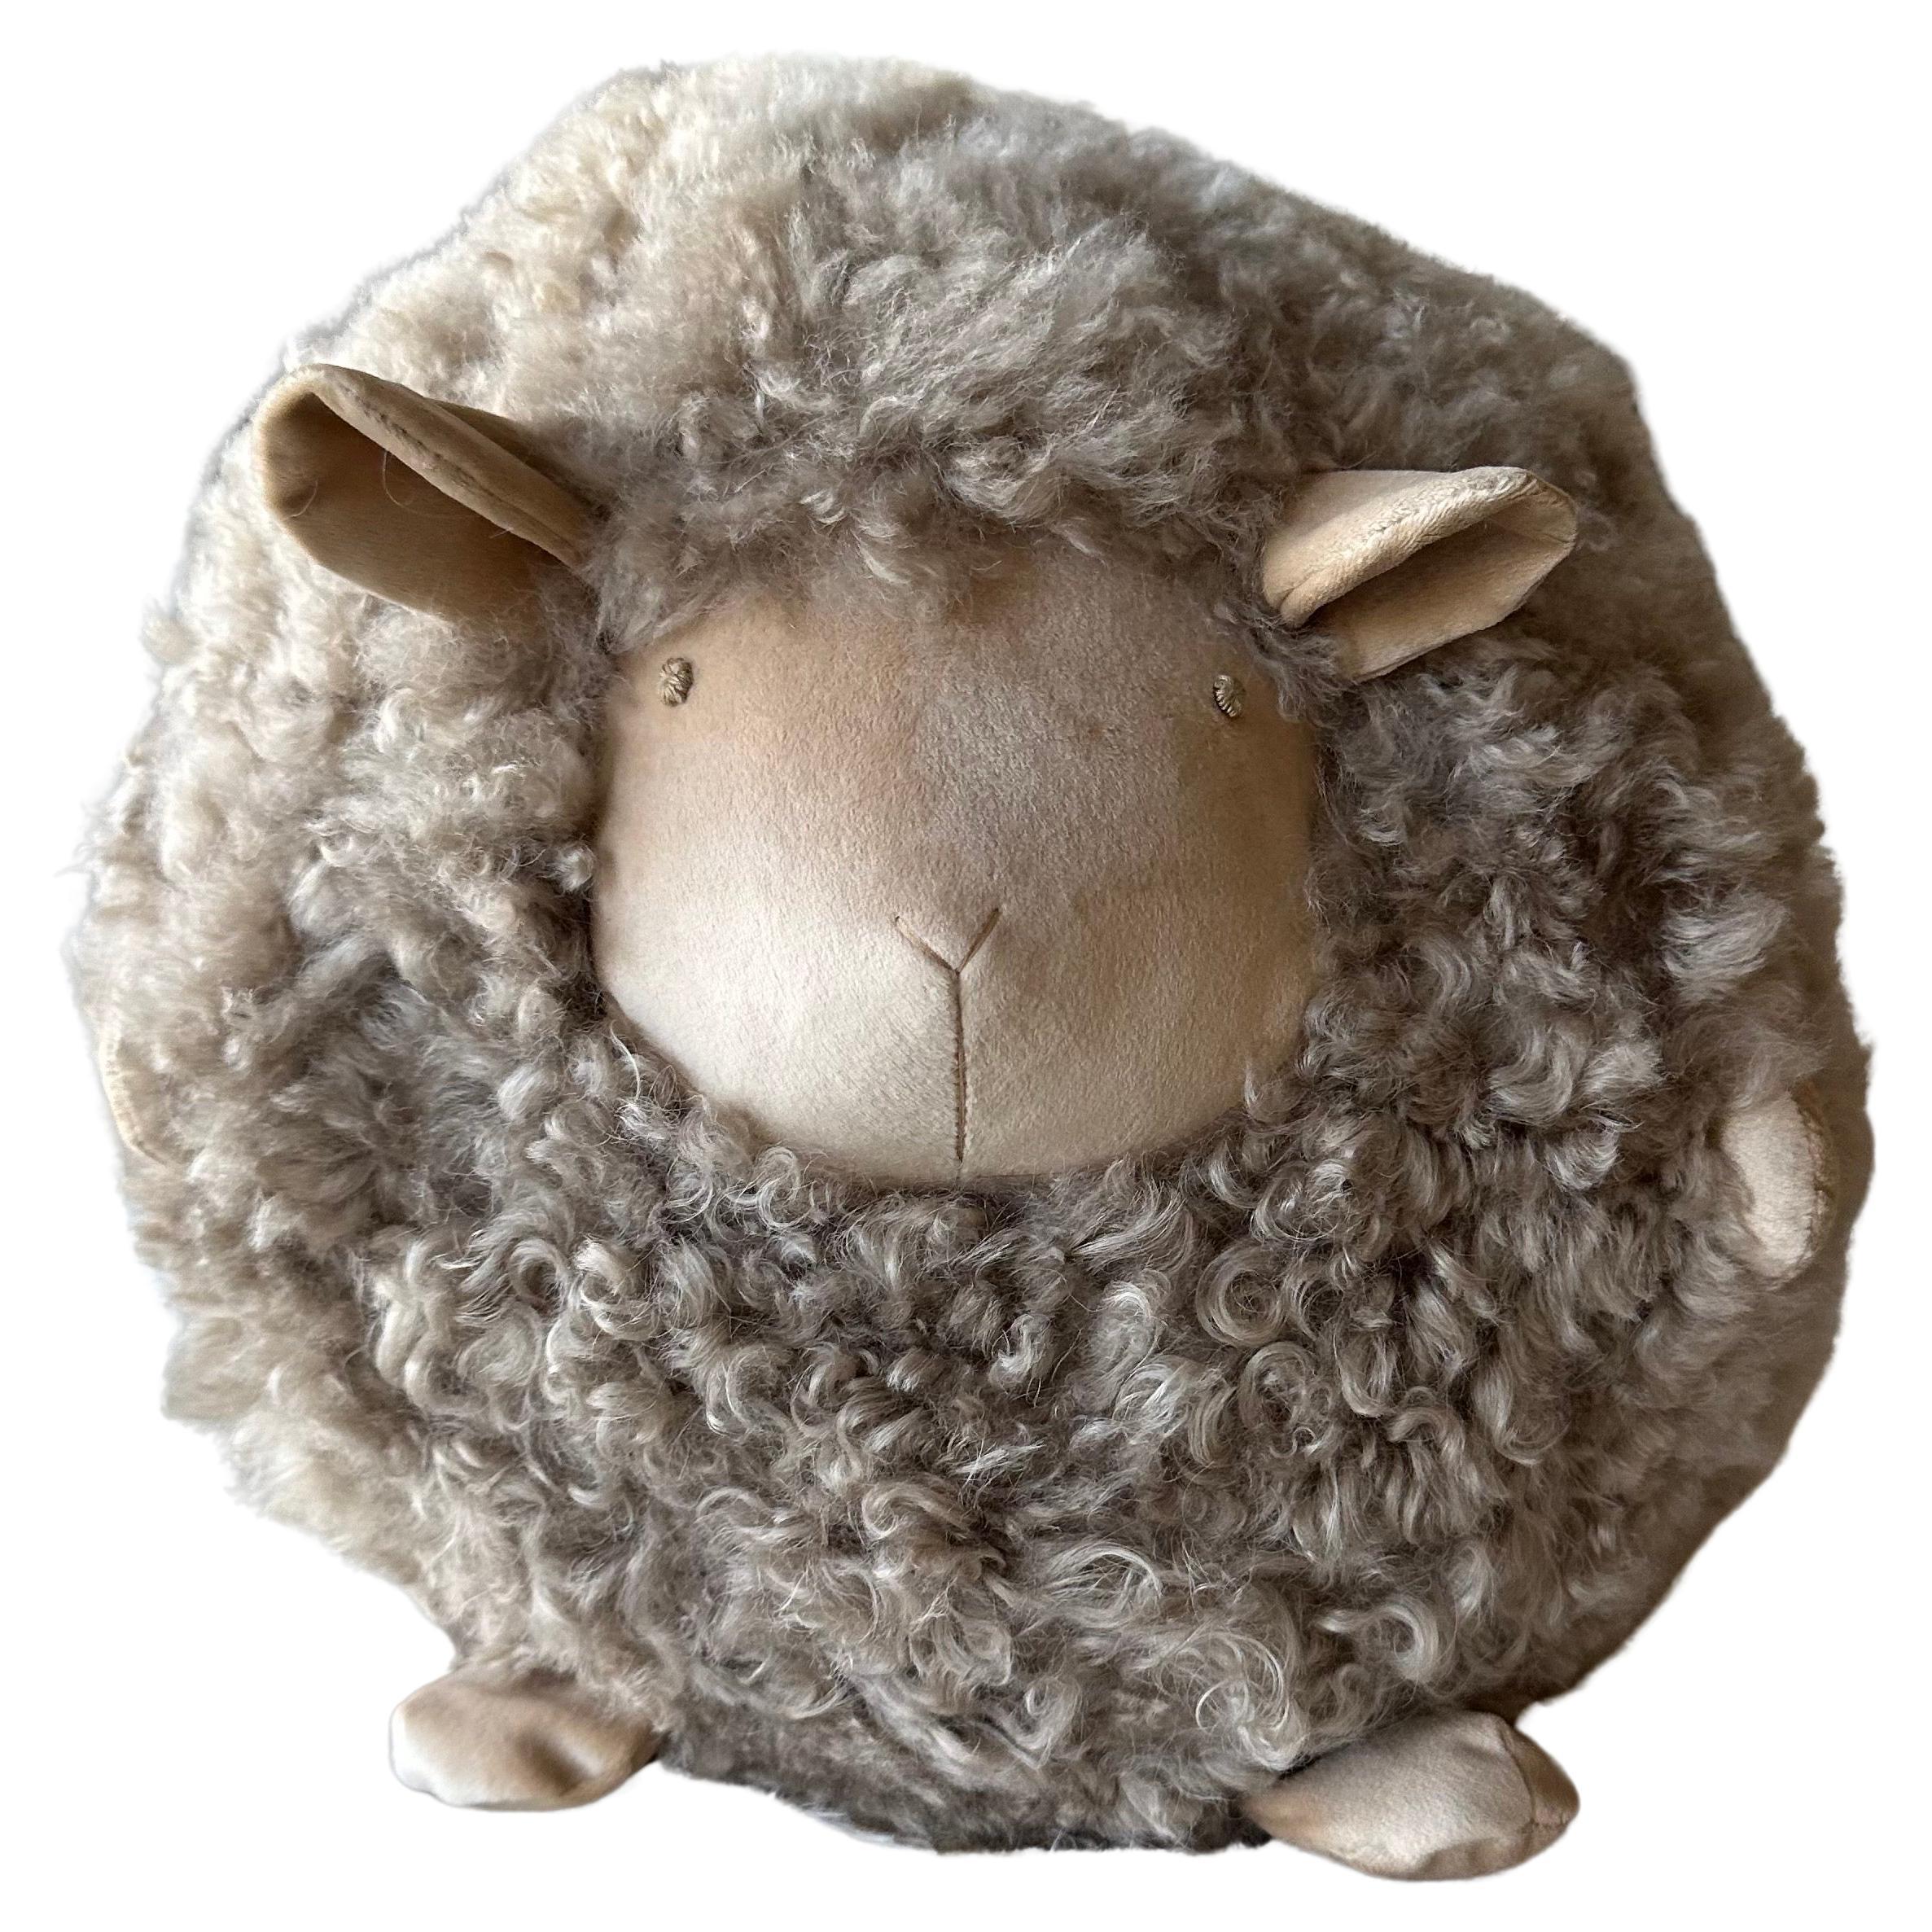 Dekoratives Schaf-Kissen aus Lammwolle 